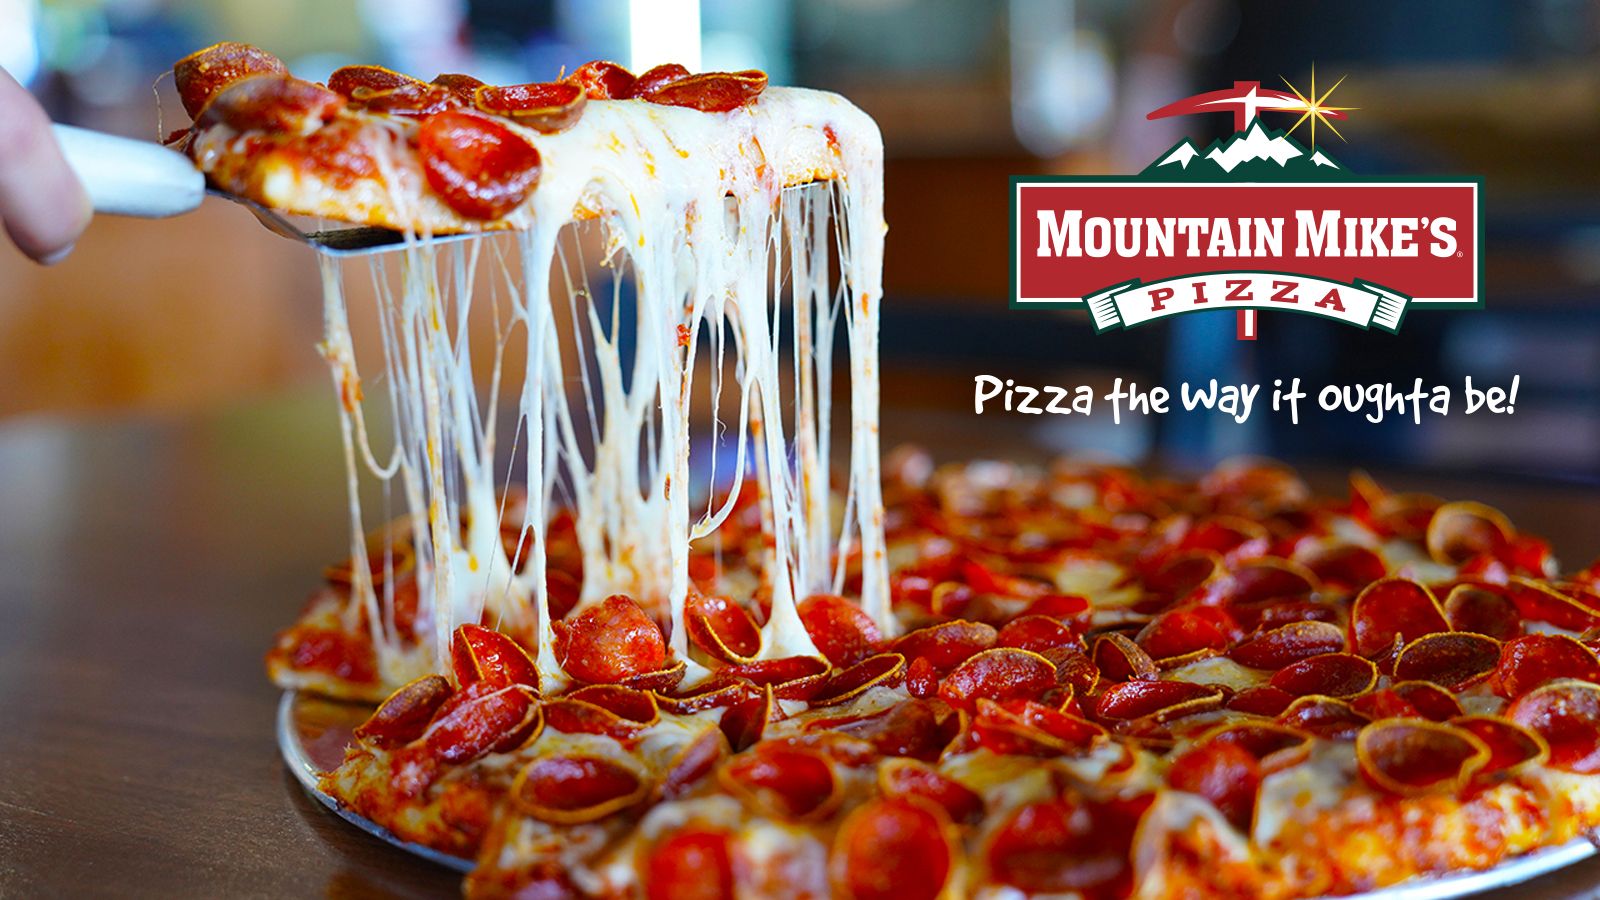 Mountain Mike's Pizza est fier d'ouvrir son premier emplacement à Napa